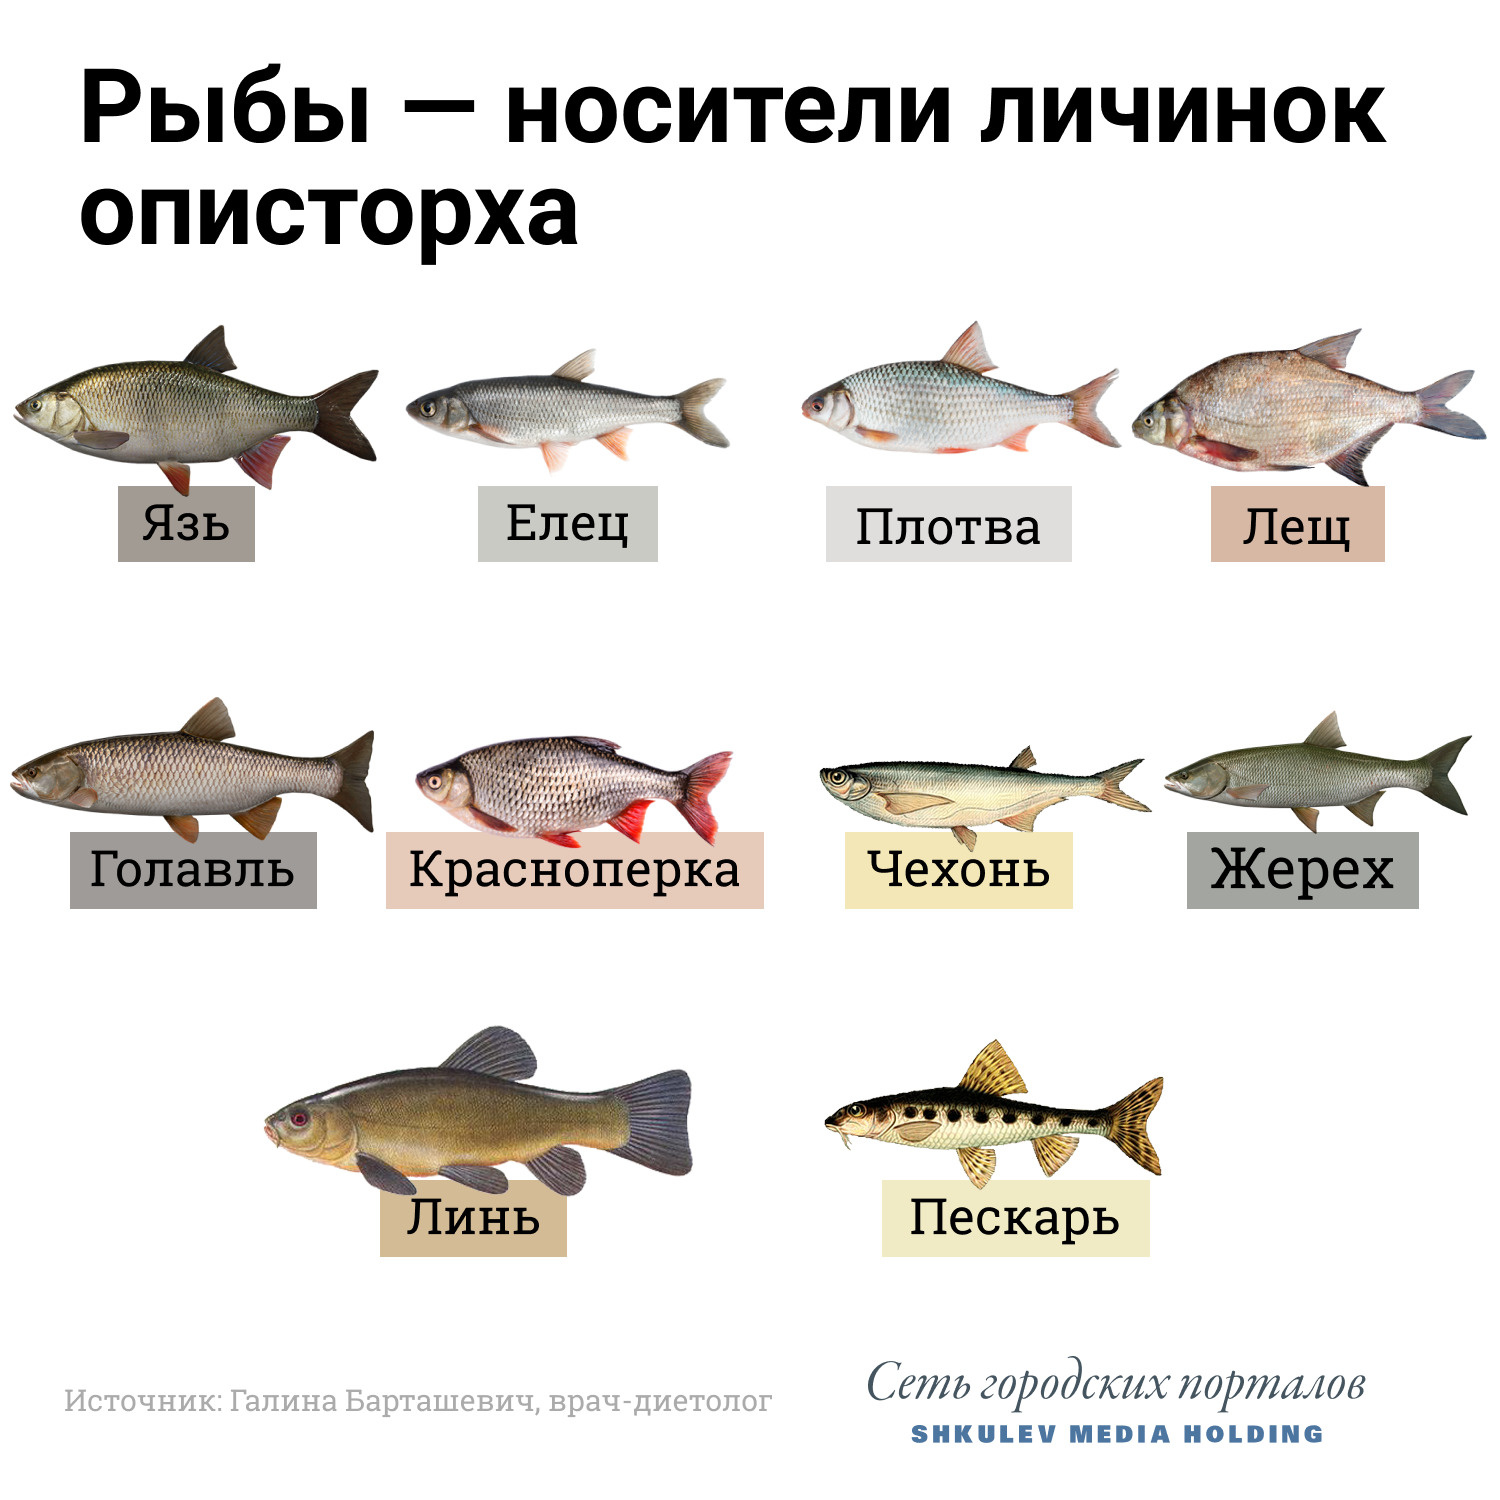 Описторхи в рыбе фото